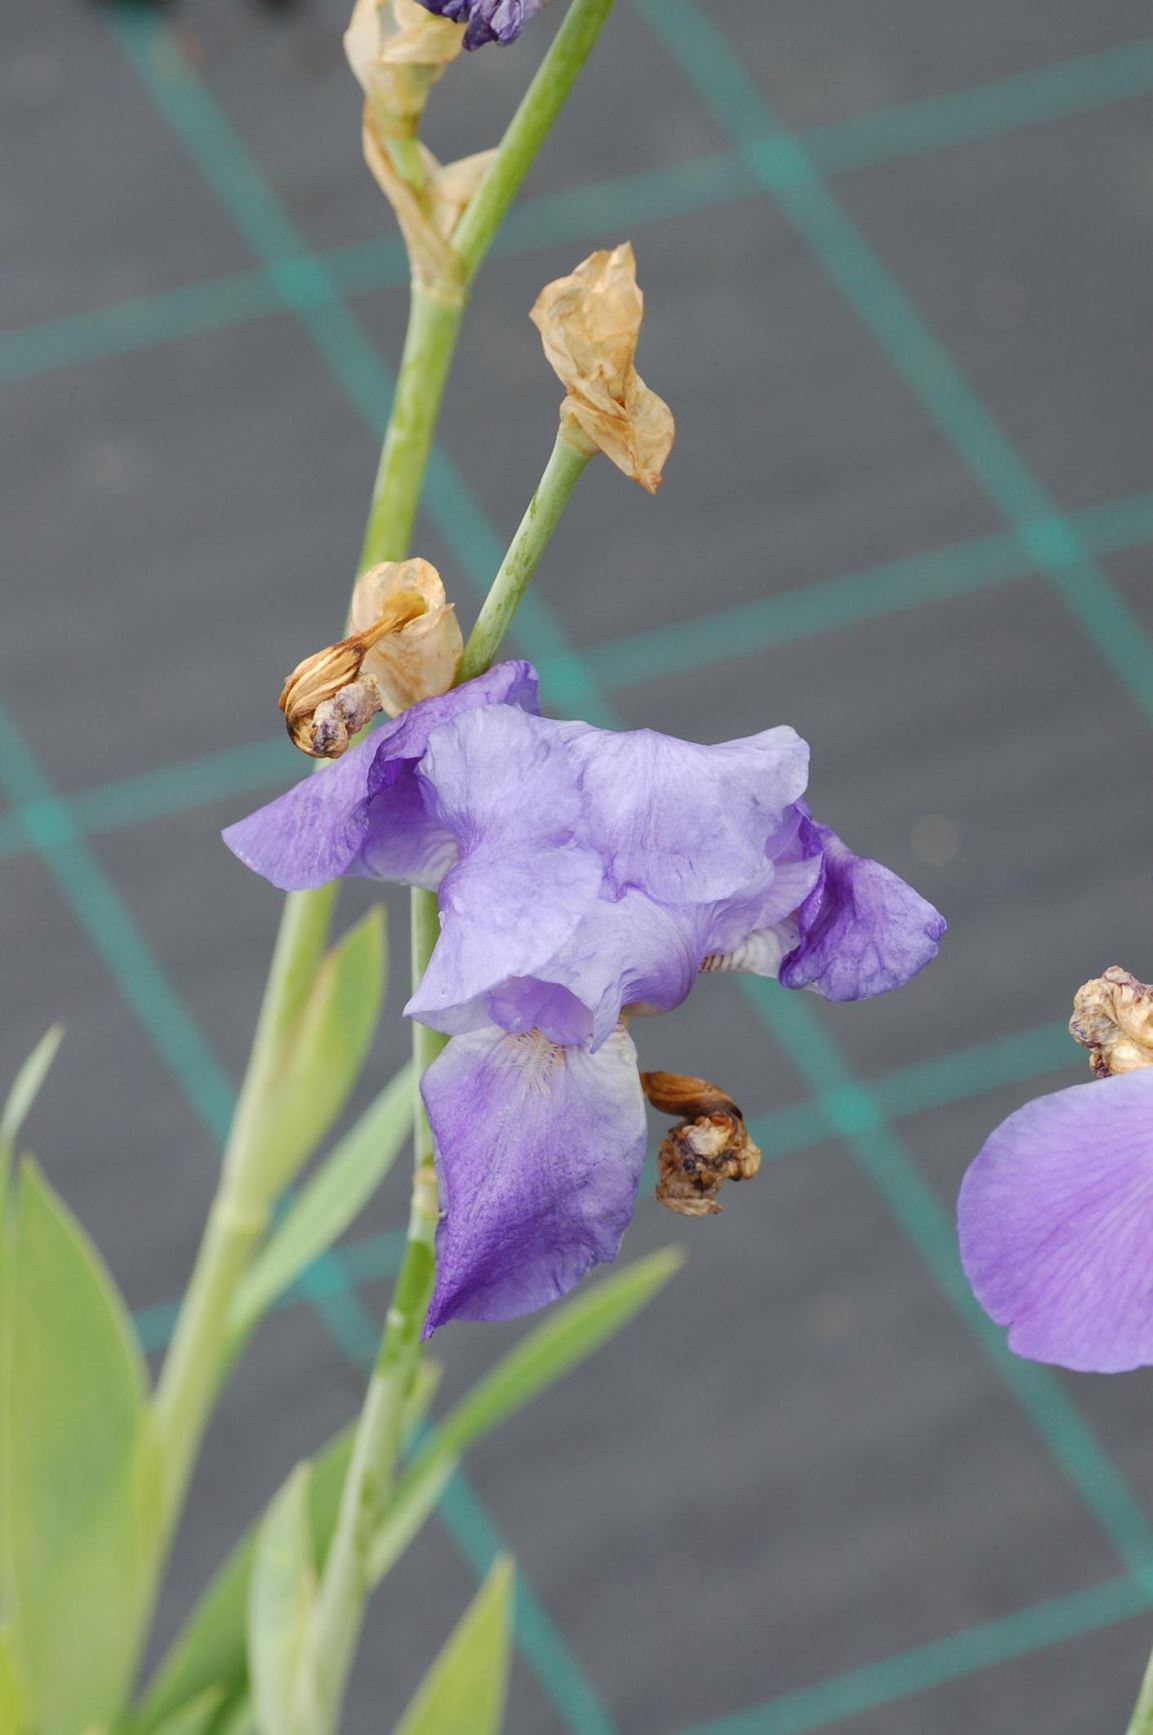 Iris × germanica 'Cultivar' - Hageiris/Germaniris/Fiolrot, Common Iris